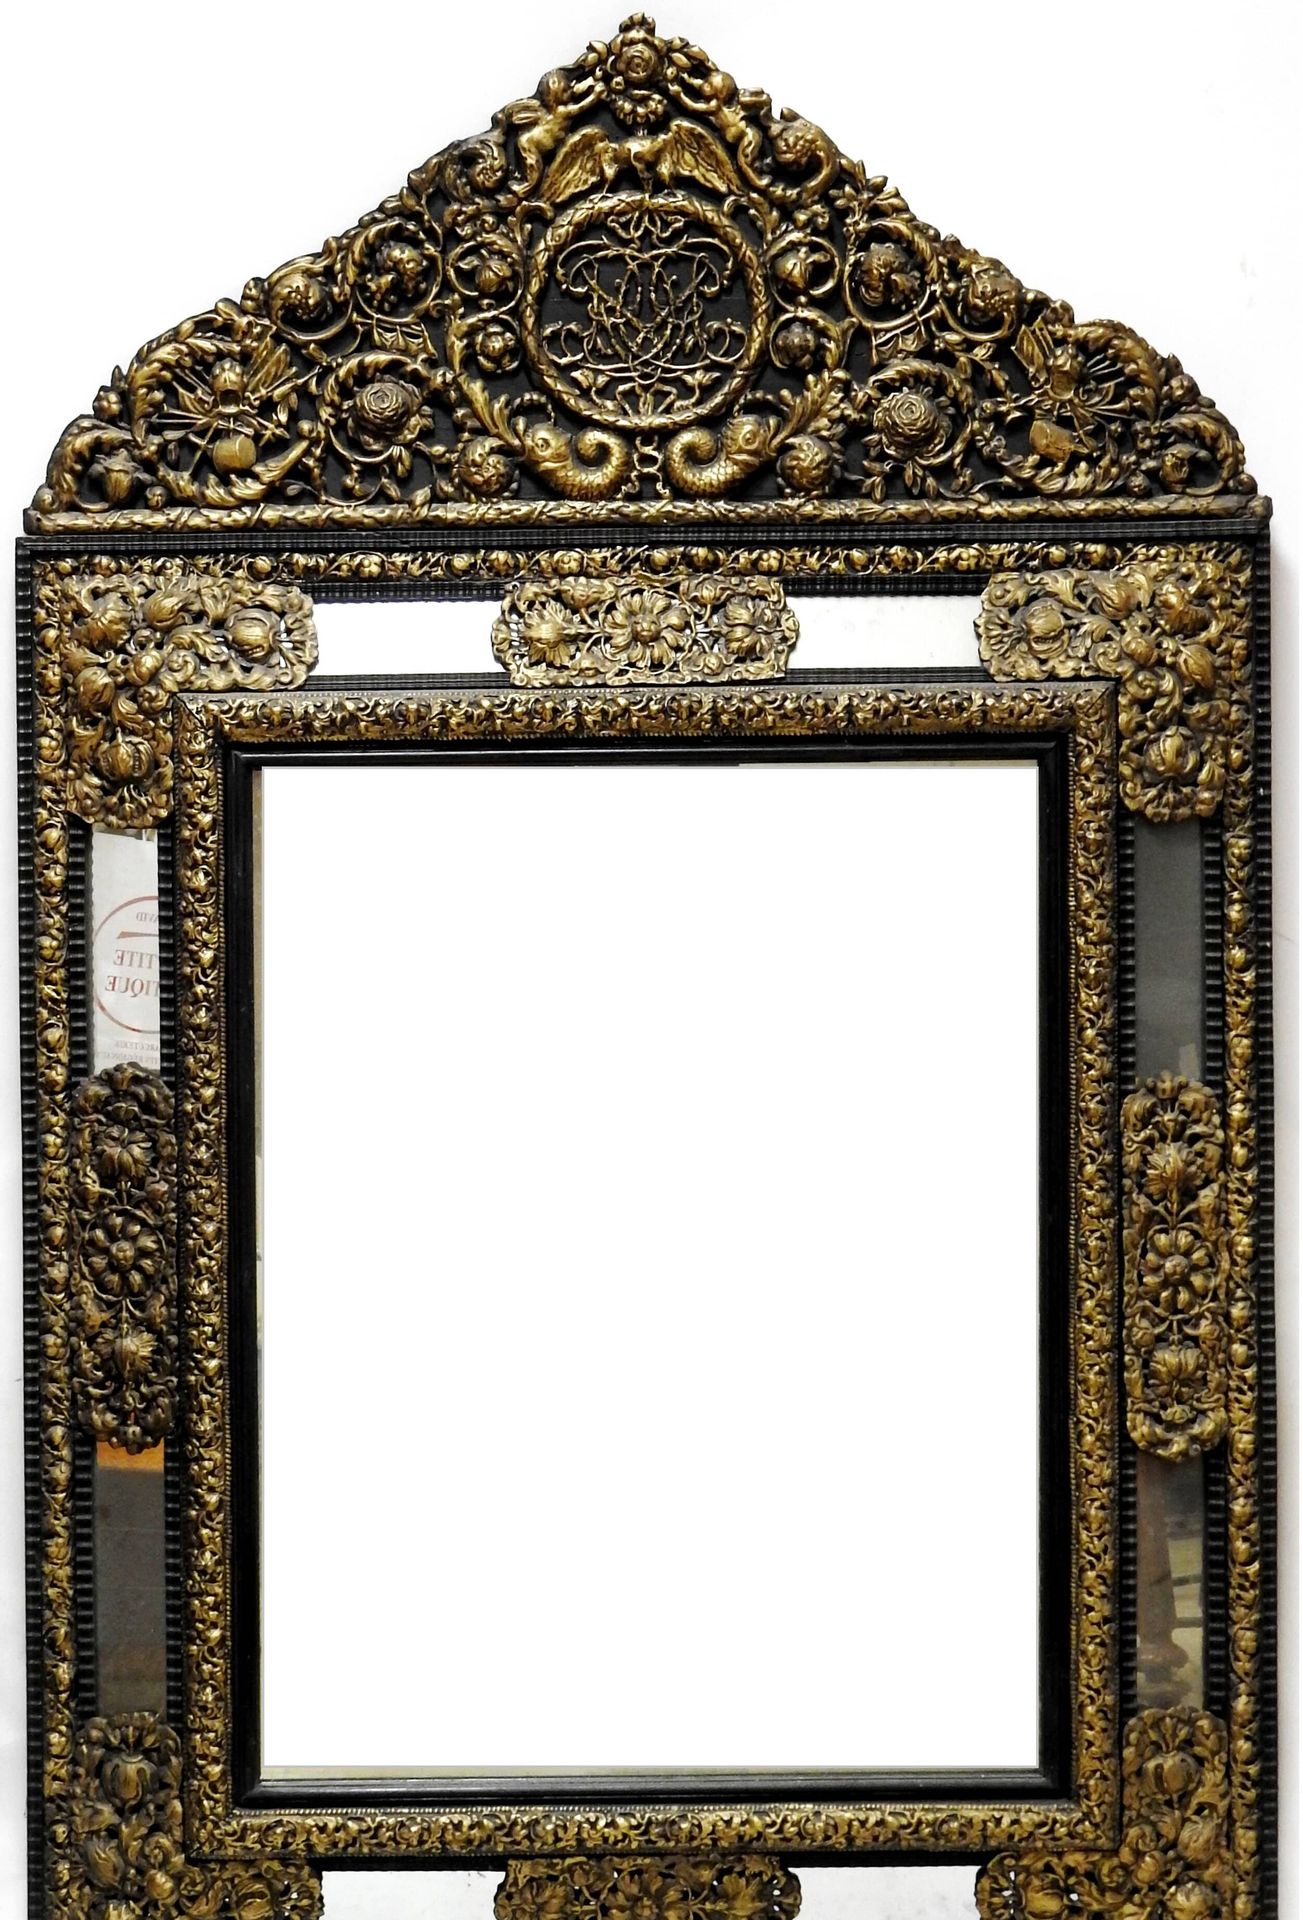 Null 大镜子，有浮雕的黄铜面板和踏板，具有路易十四风格的图案。

19世纪。

161 x 100厘米。

磨损和撕裂